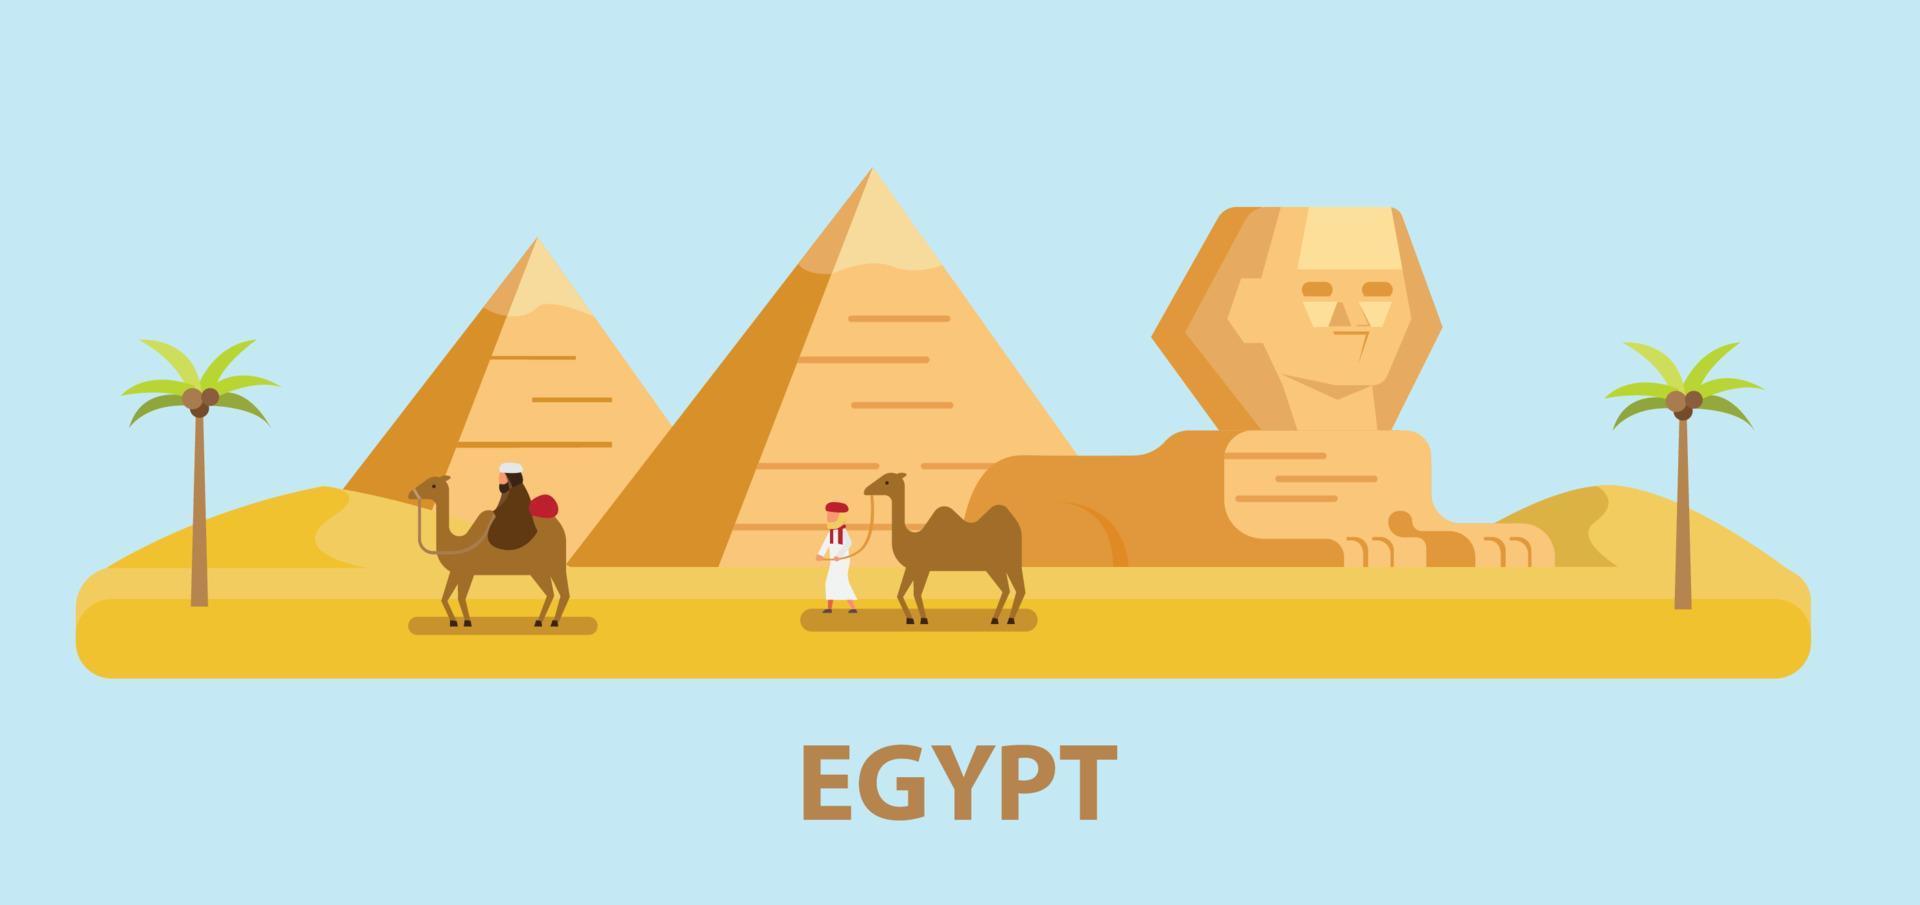 Reise nach Ägypten, Pyramide, Sphinx und Mann mit Kamel im flachen Design-Illustrationsvektor vektor